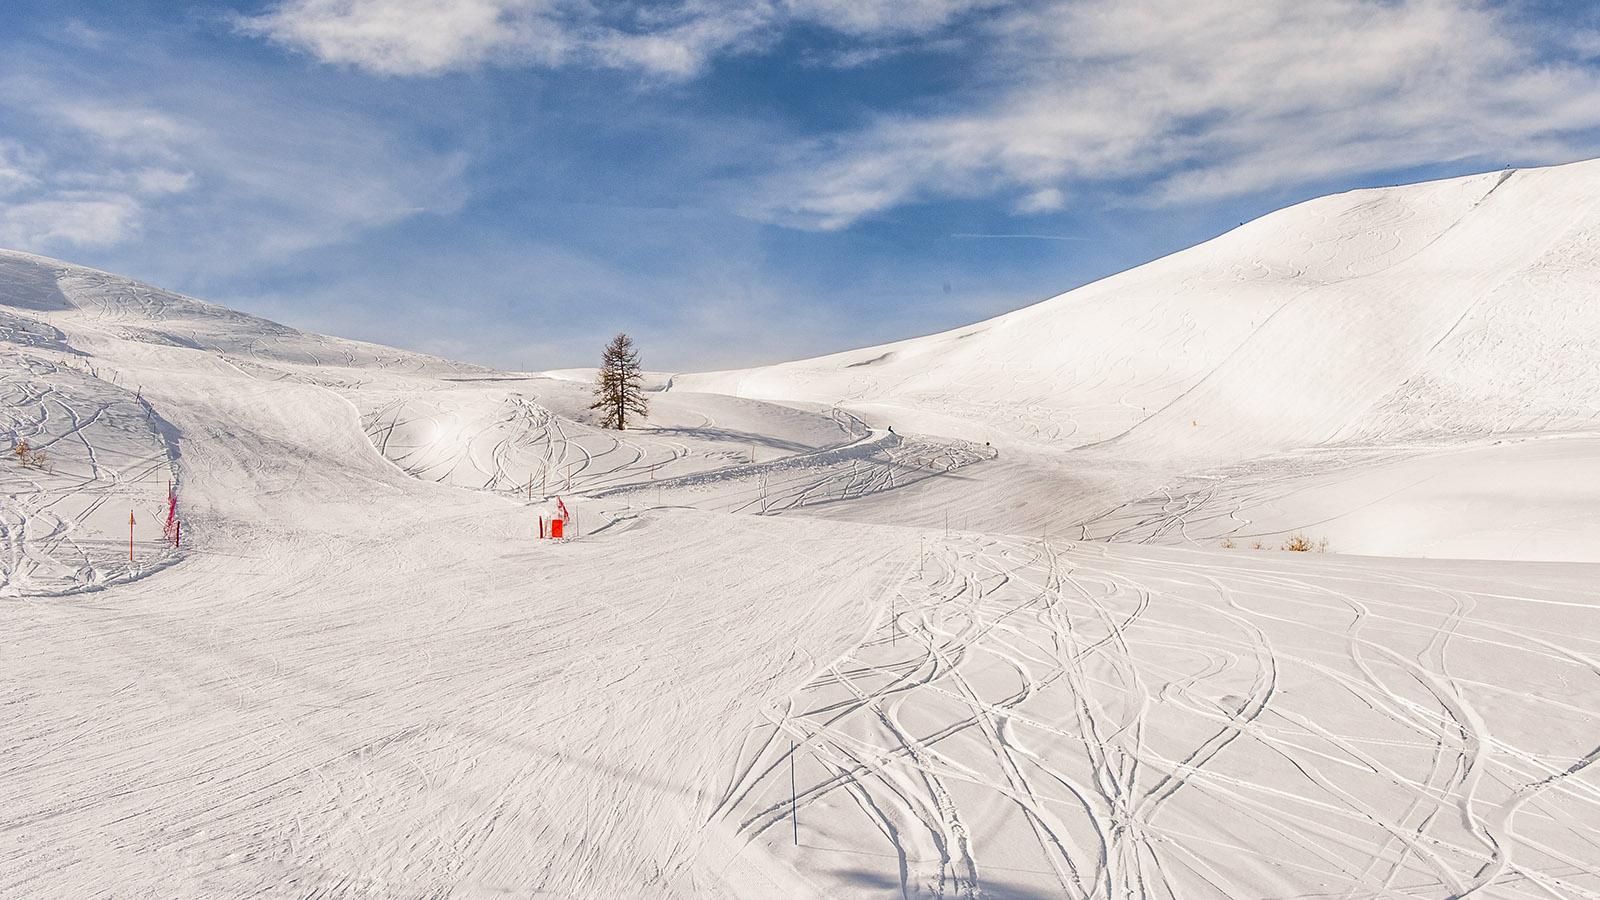 Je höher, desto einsamer wird der Skizirkus, Foto: Hilke Maunder